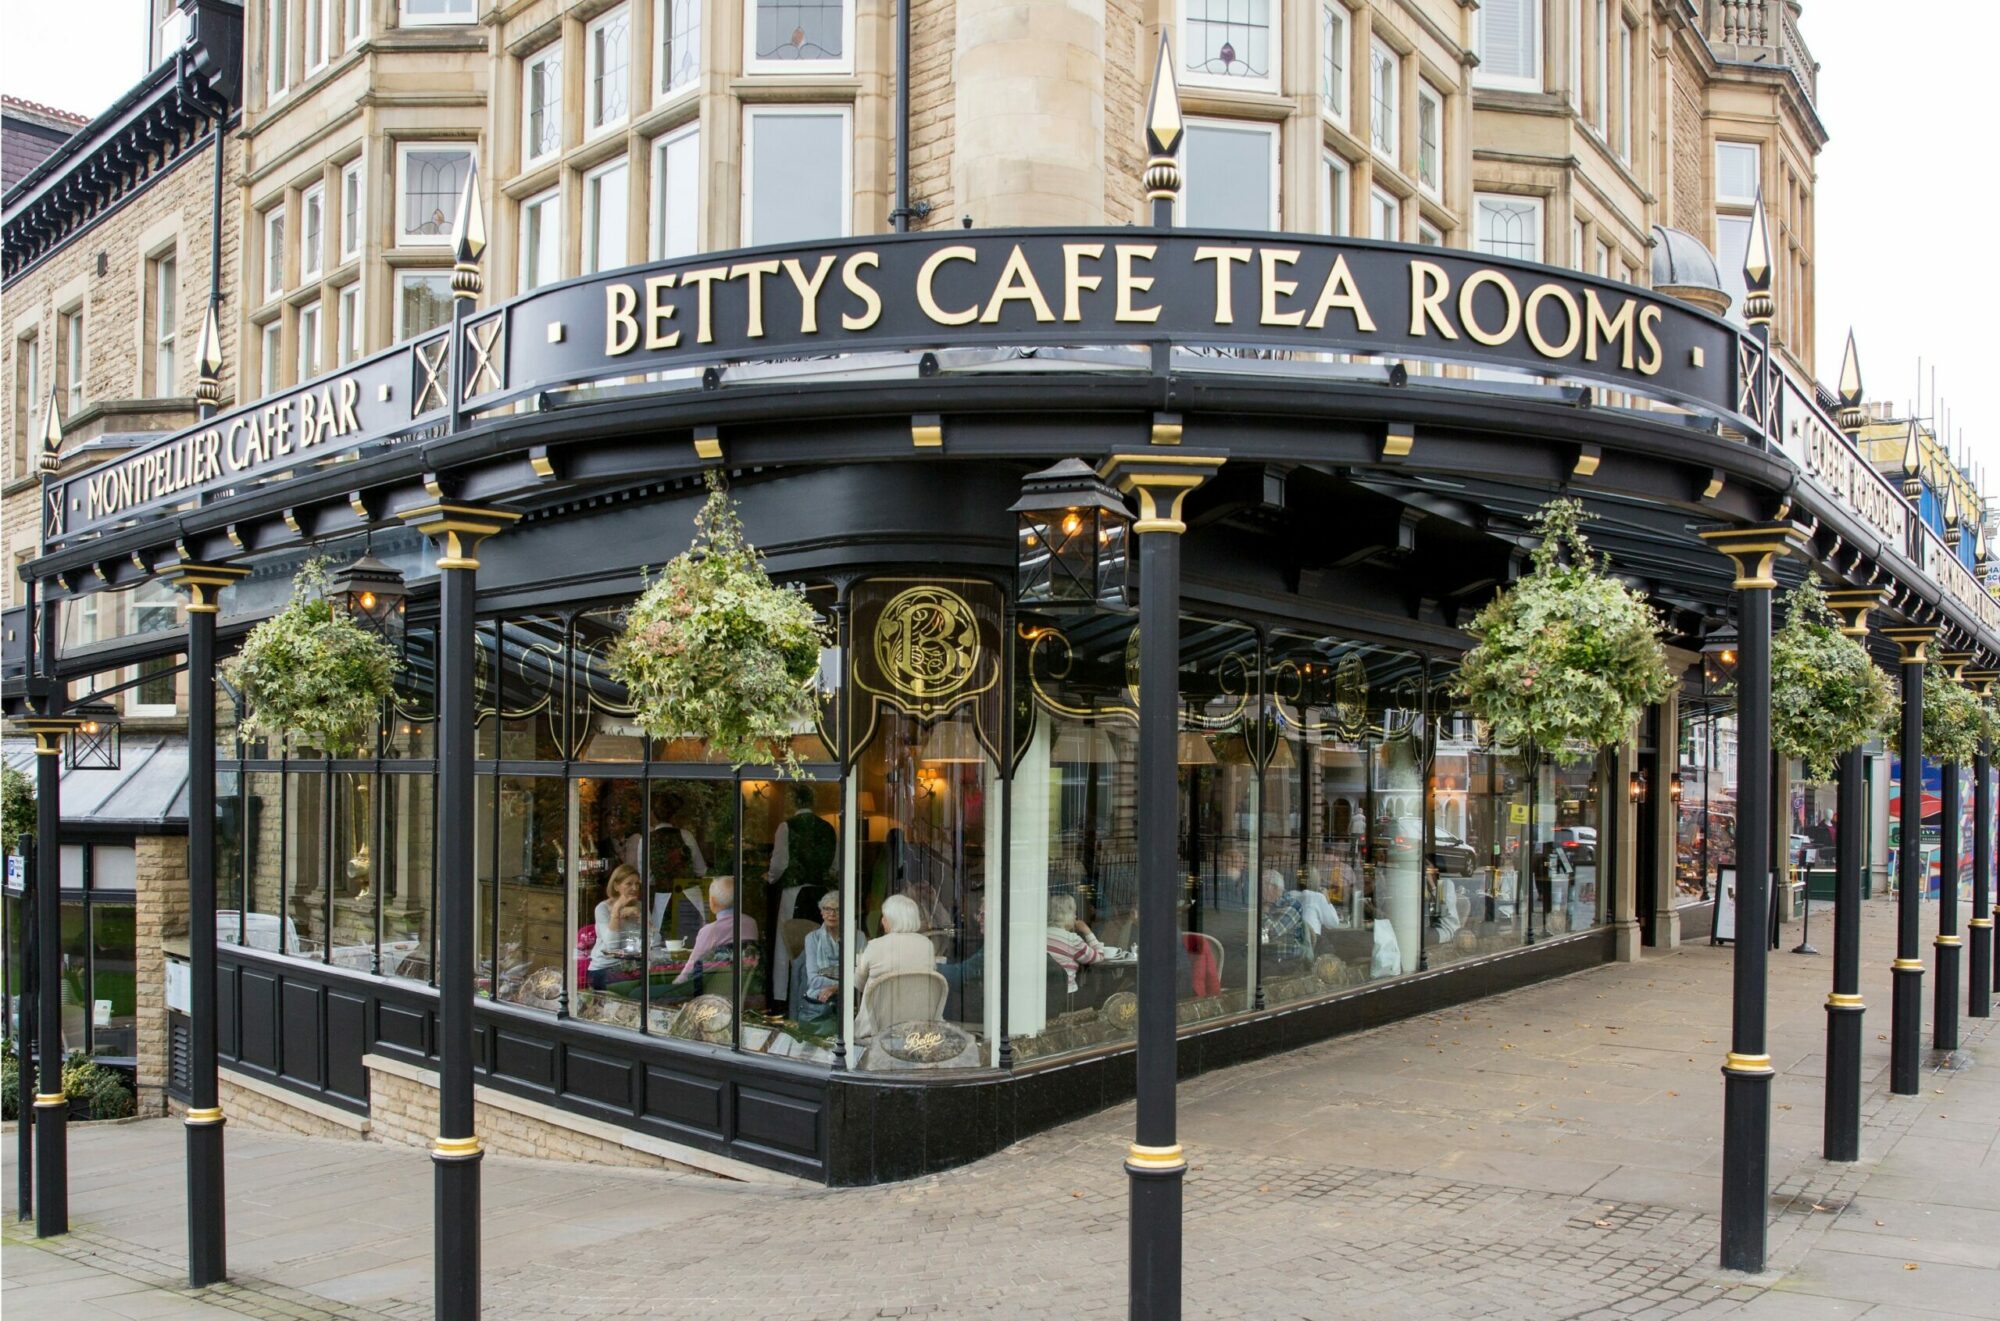 Bettys café and tea room in Harrogate